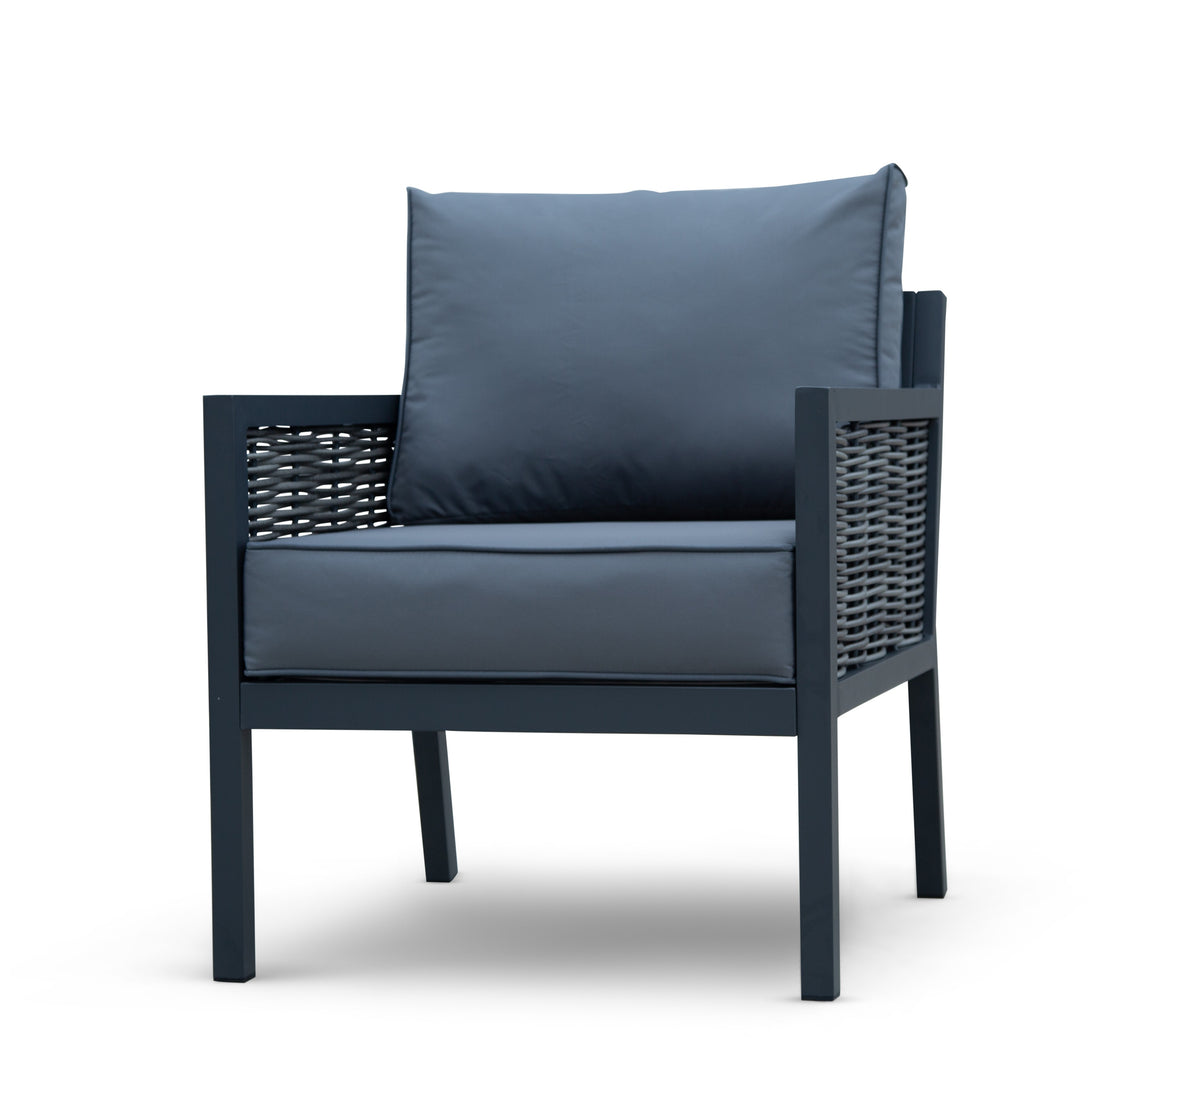 Lisbon Aluminium Corner Sofa, Chair, Bench &amp; Rising Table Dining Set | Dark Grey